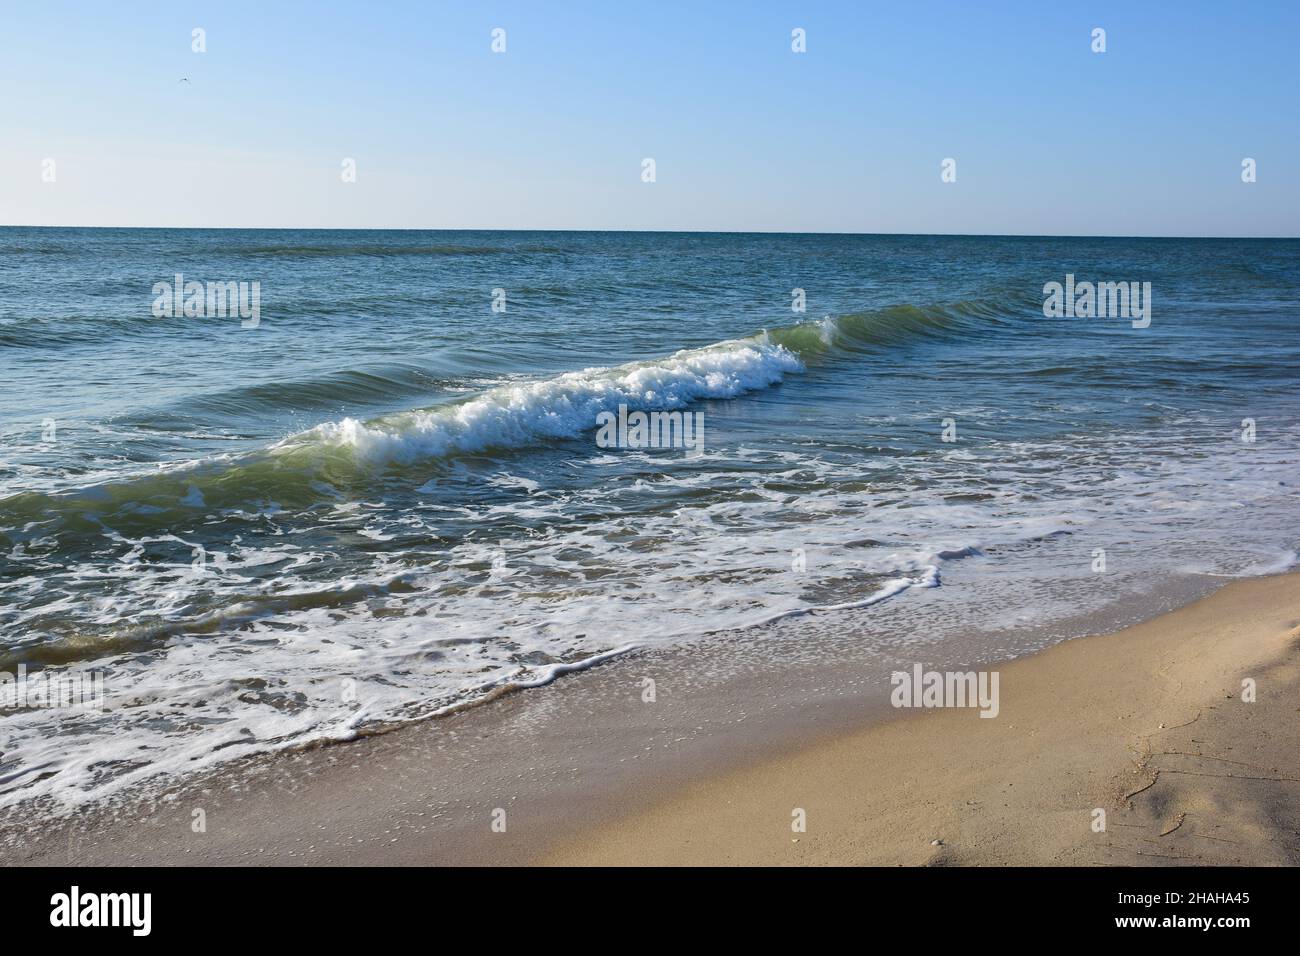 Il surf sul mare scorre sulla spiaggia sabbiosa in piccole onde schiumose. Il cielo è limpido, senza nuvole Foto Stock